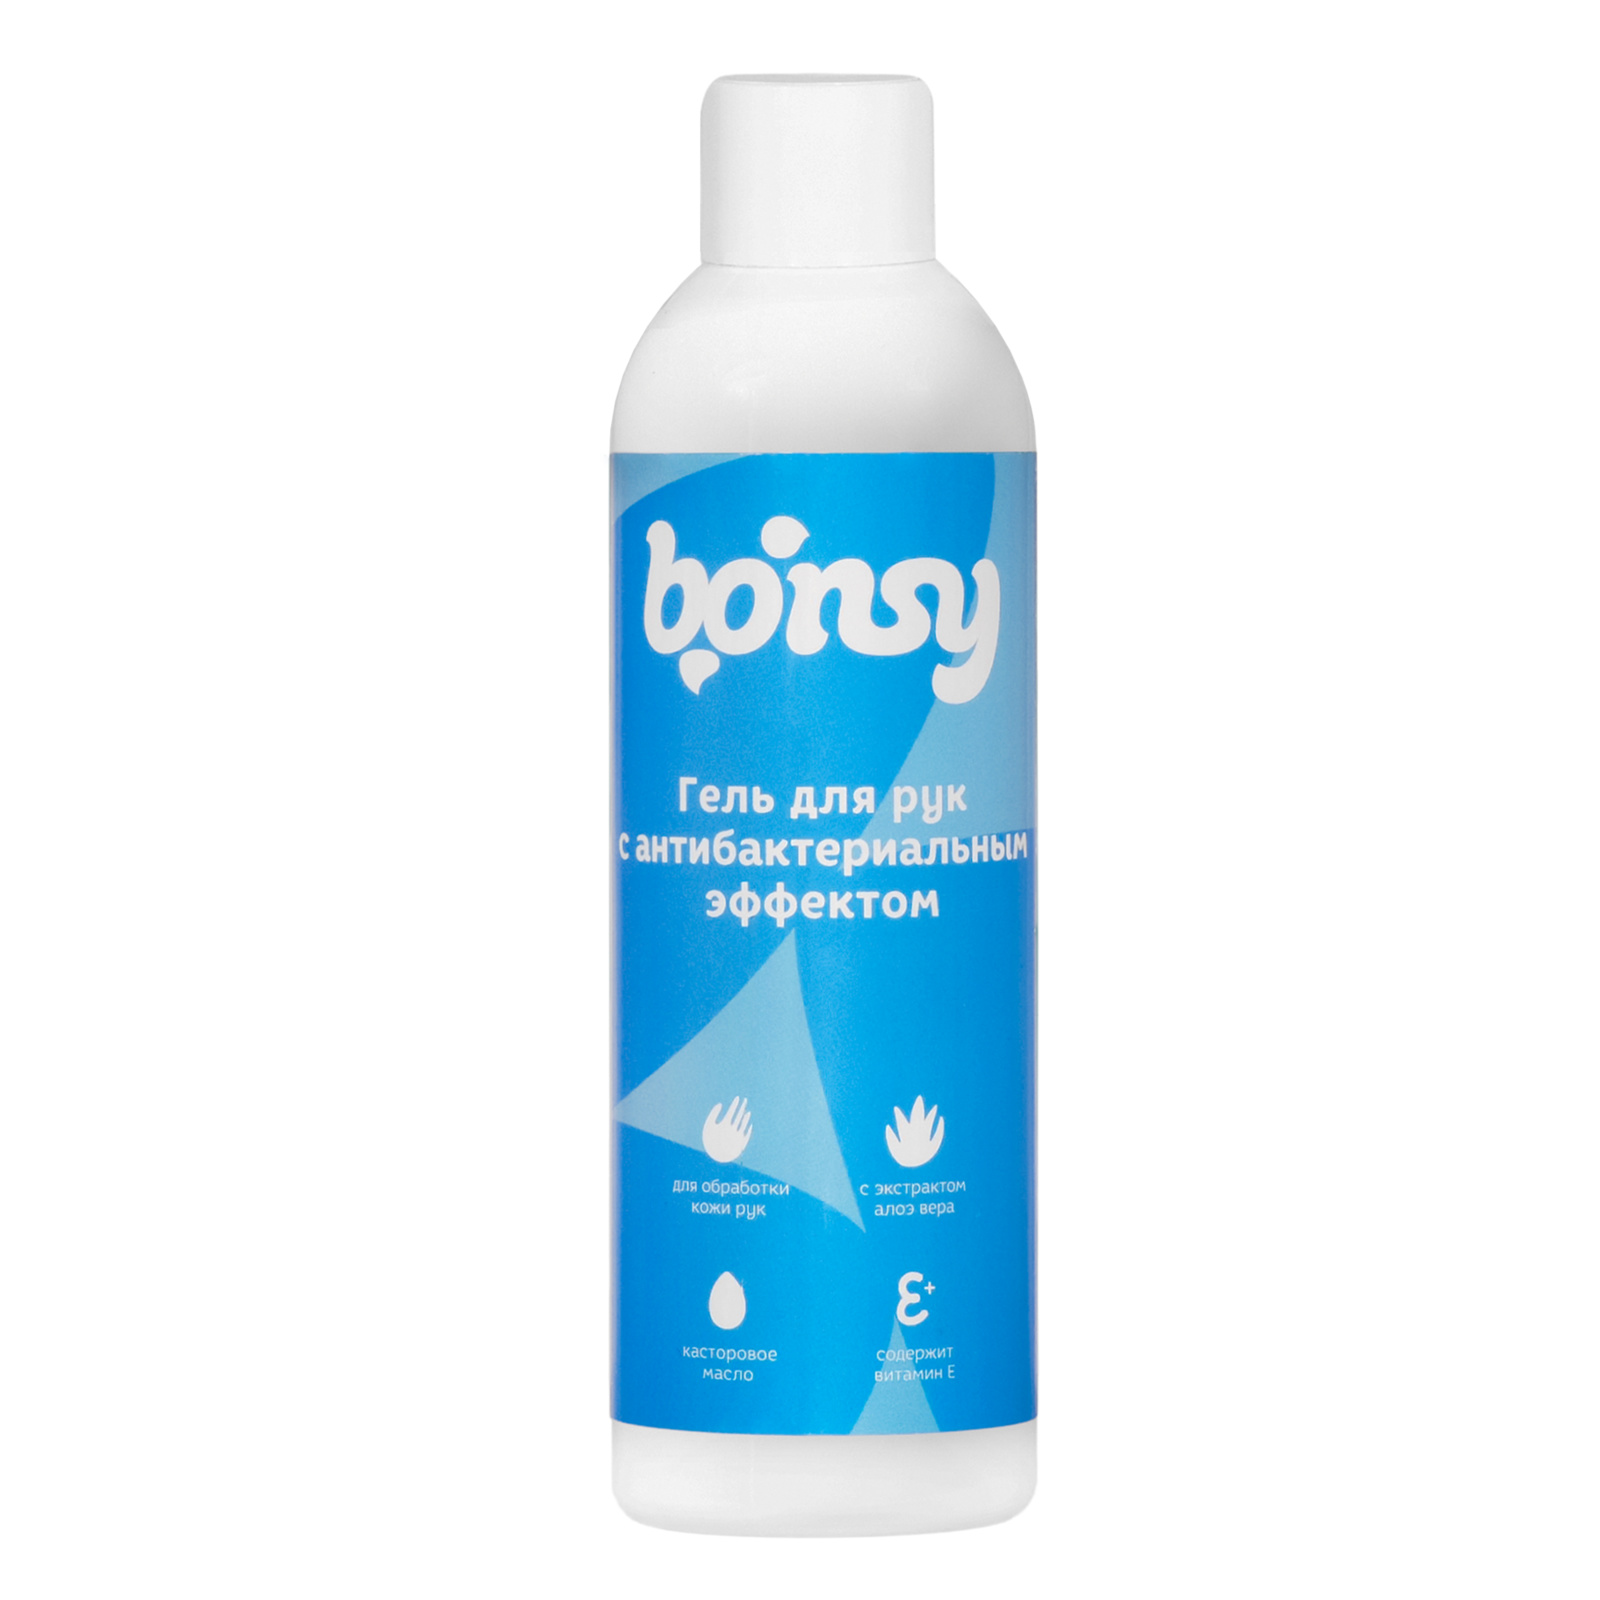 Bonsy Bonsy гель для рук с антибактериальным эффектом (150 г) антибактериальные и противовирусные средства domix totaldis тоталдез гель антисептическое средство 63% изопропилового спирта